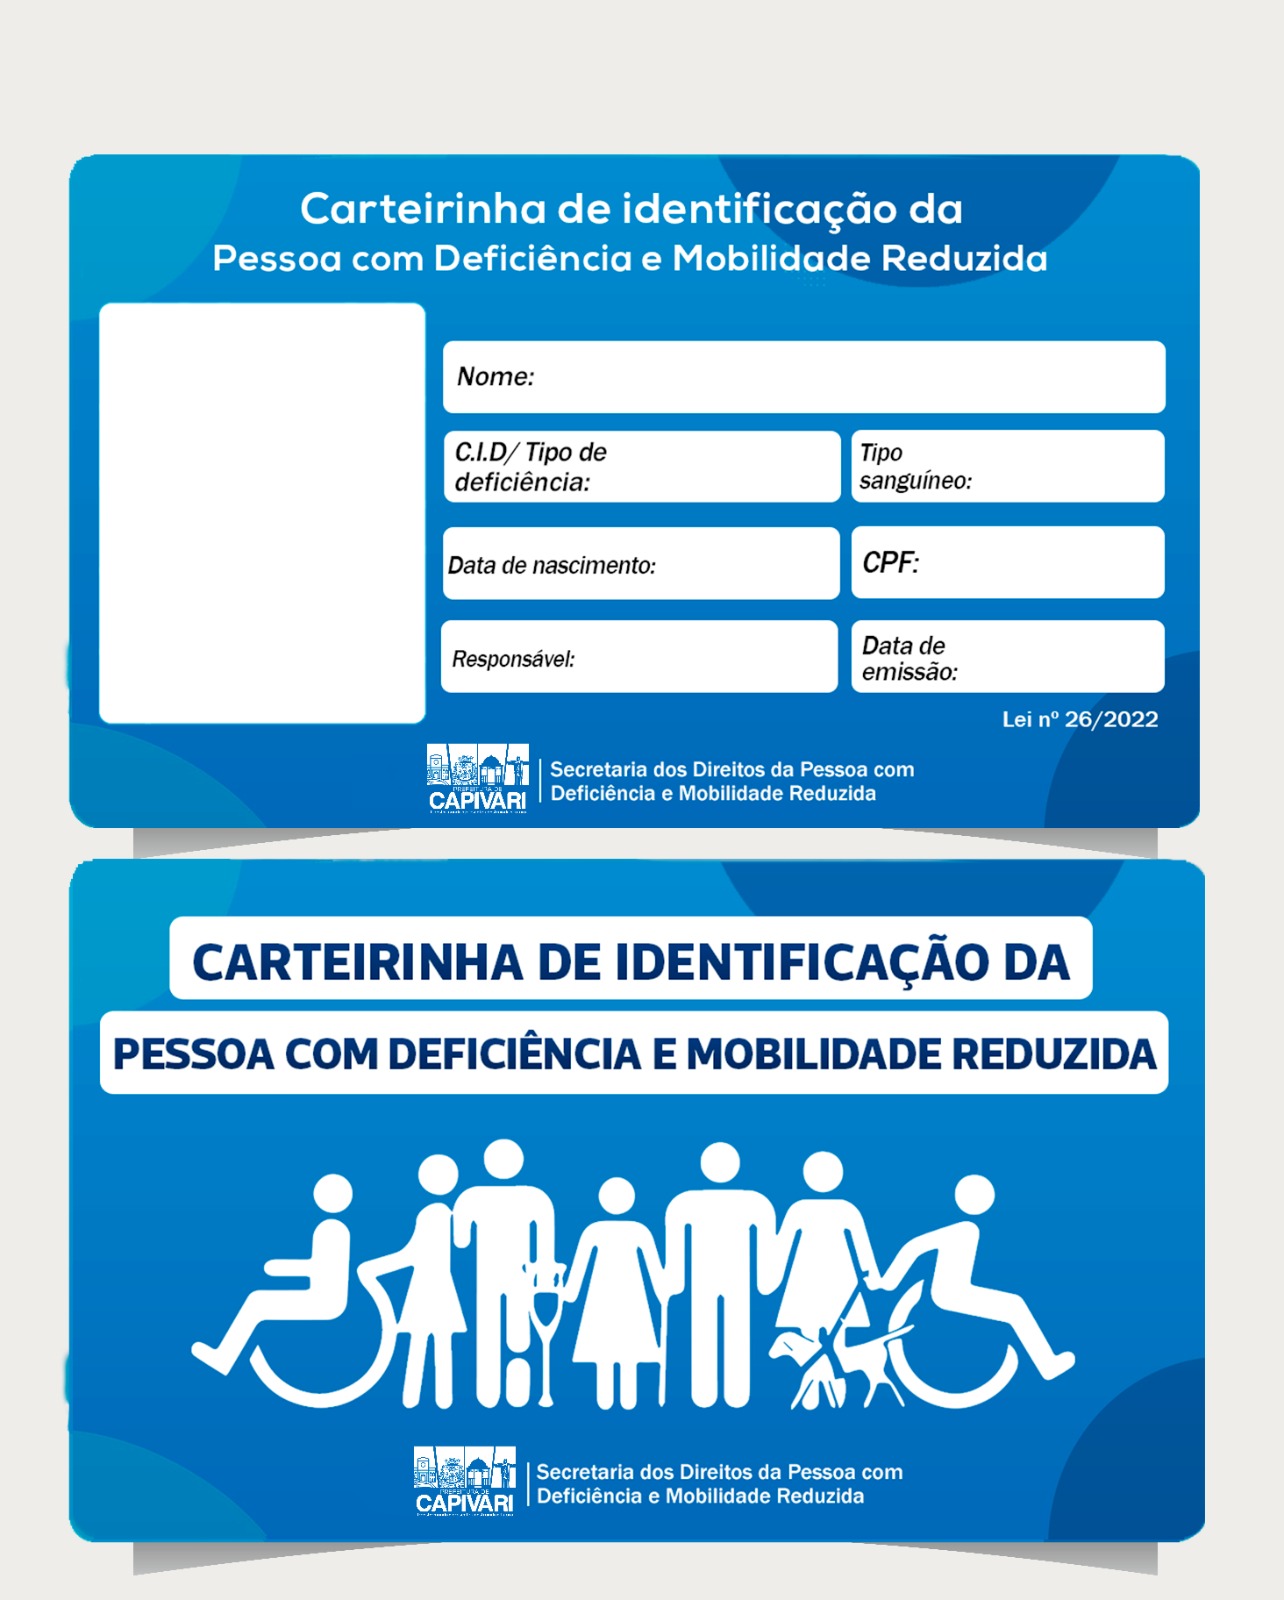 Carteira de identificação da Pessoa com Deficiência continua sendo emitida pela Secretaria PCD